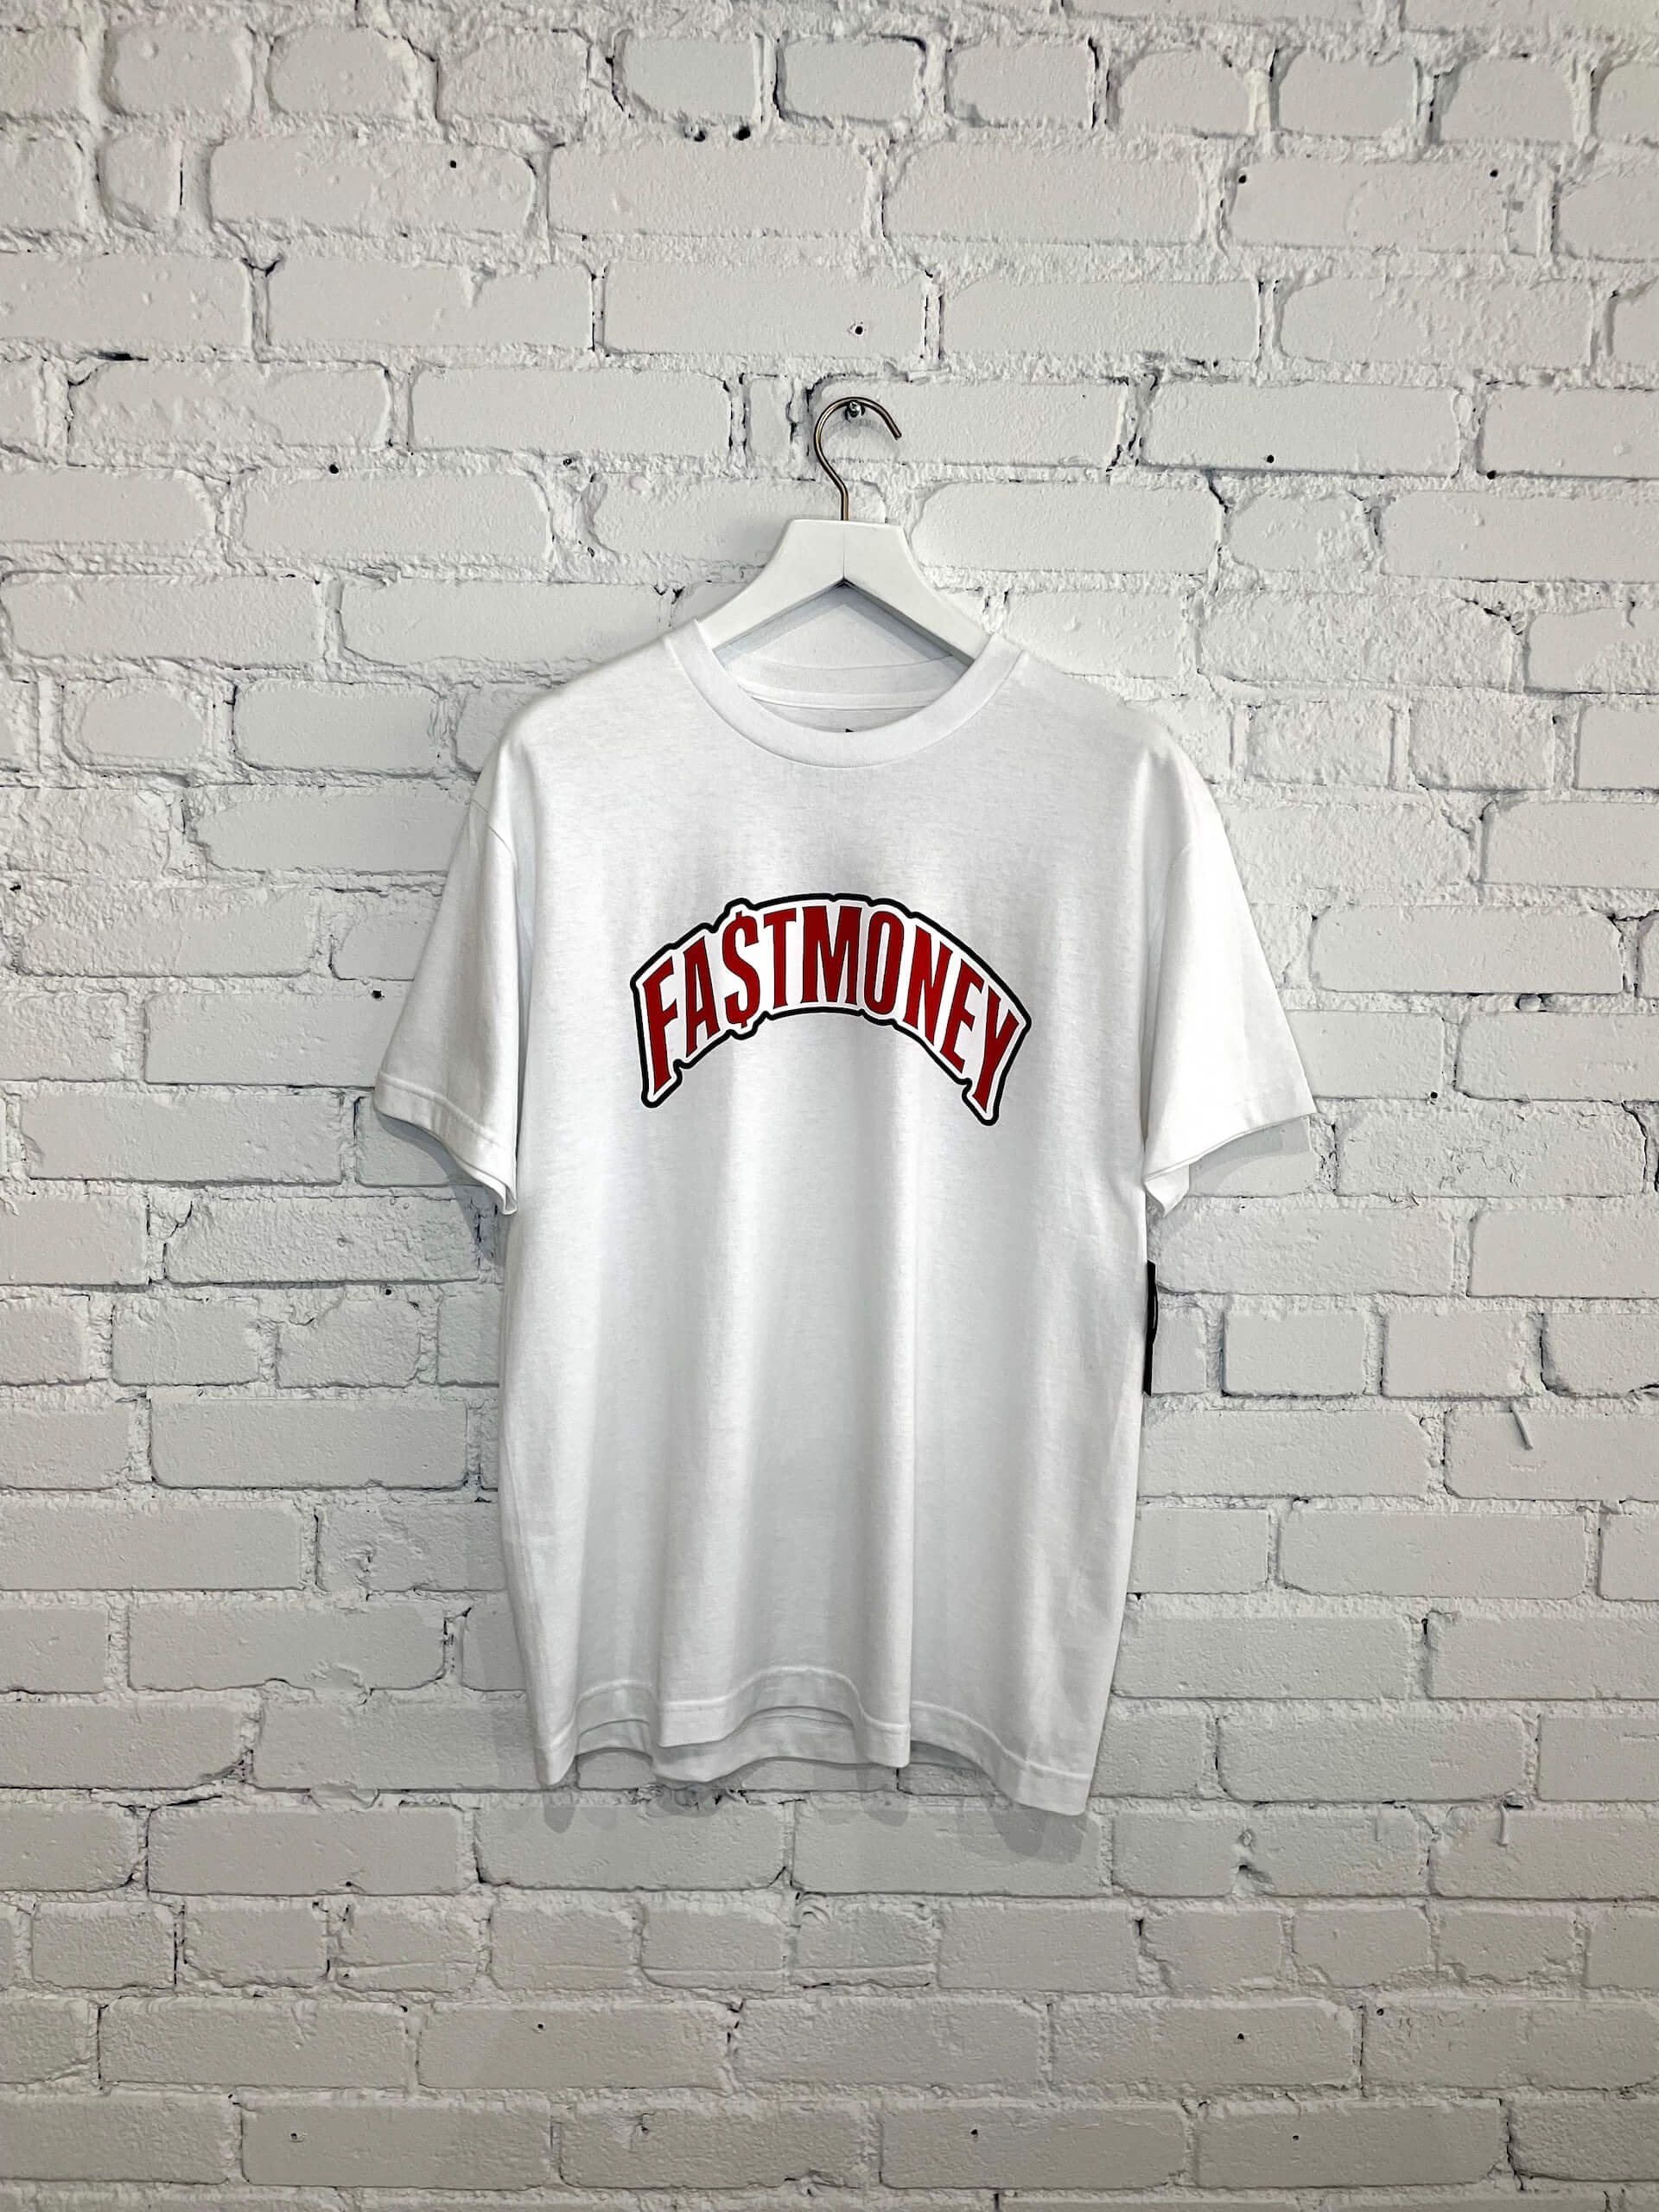 Fastmoney Tshirt